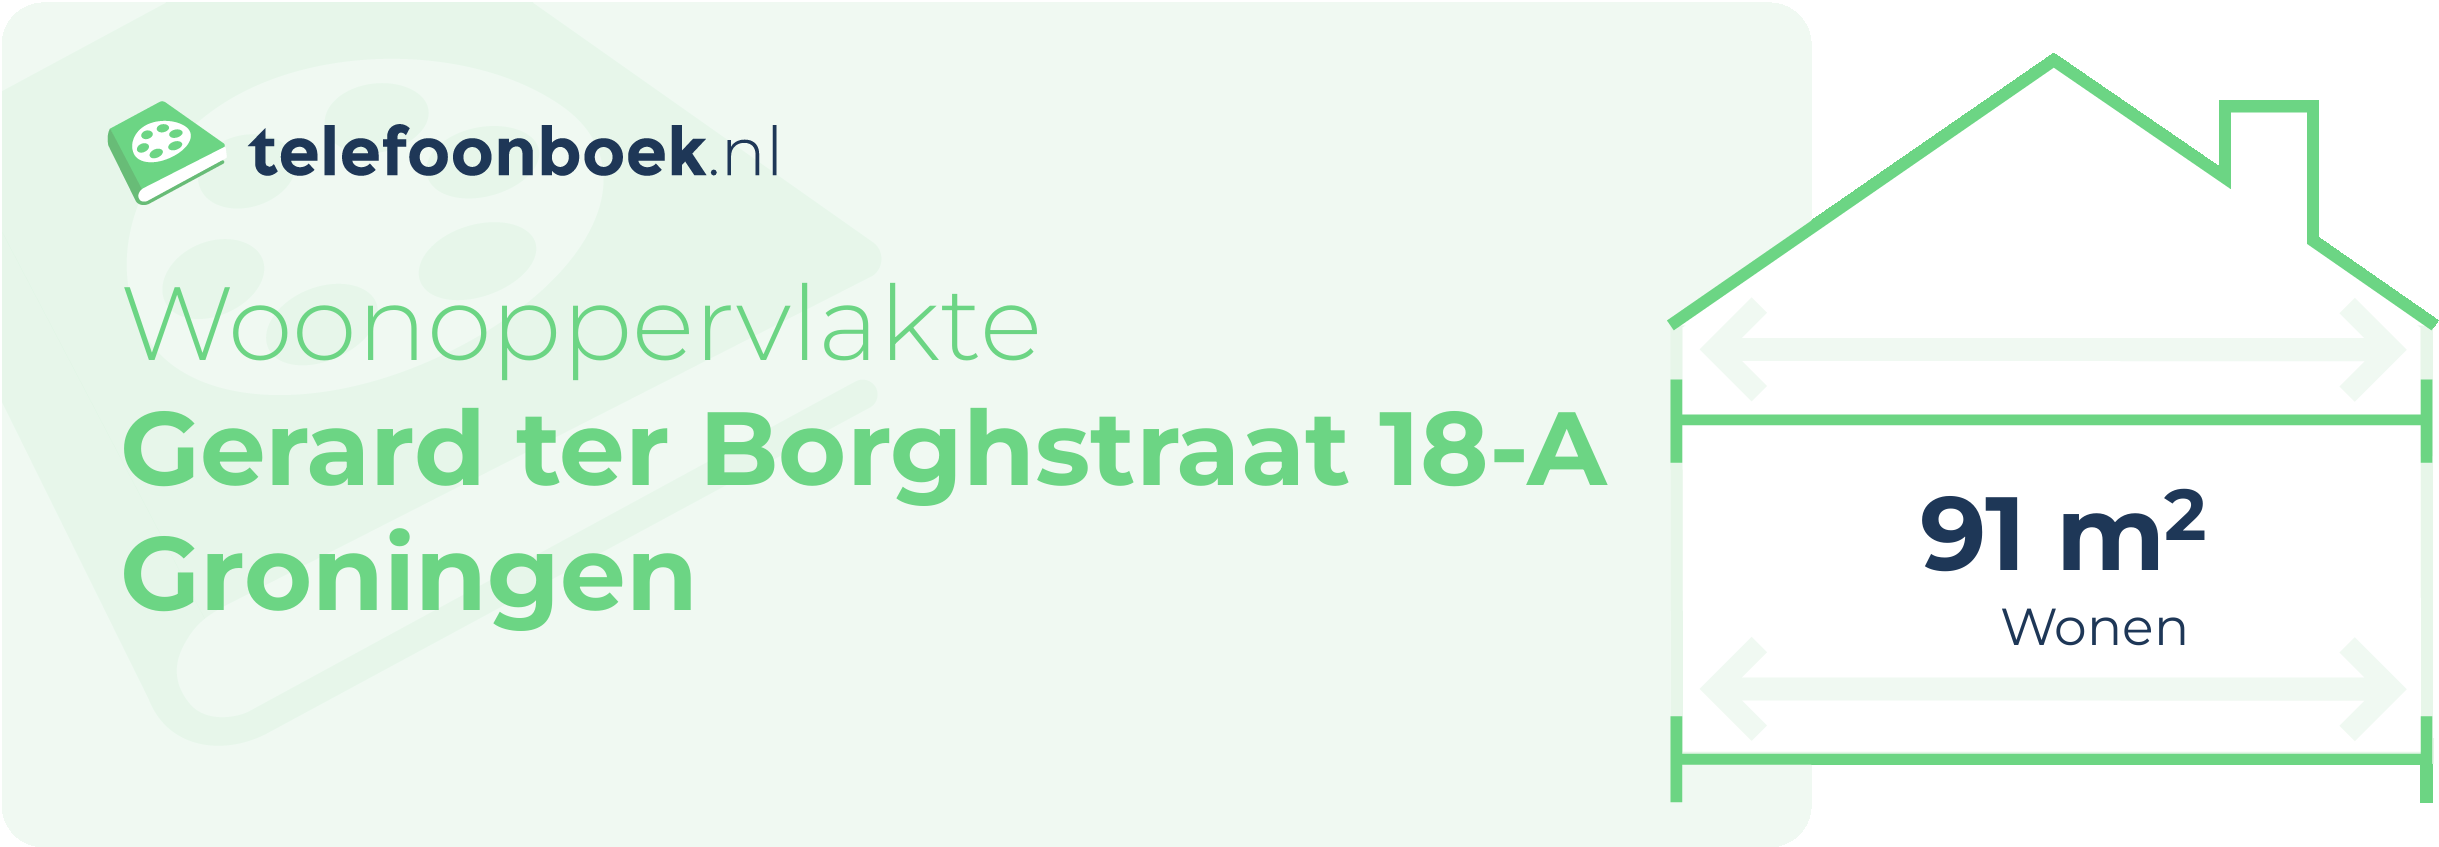 Woonoppervlakte Gerard Ter Borghstraat 18-A Groningen